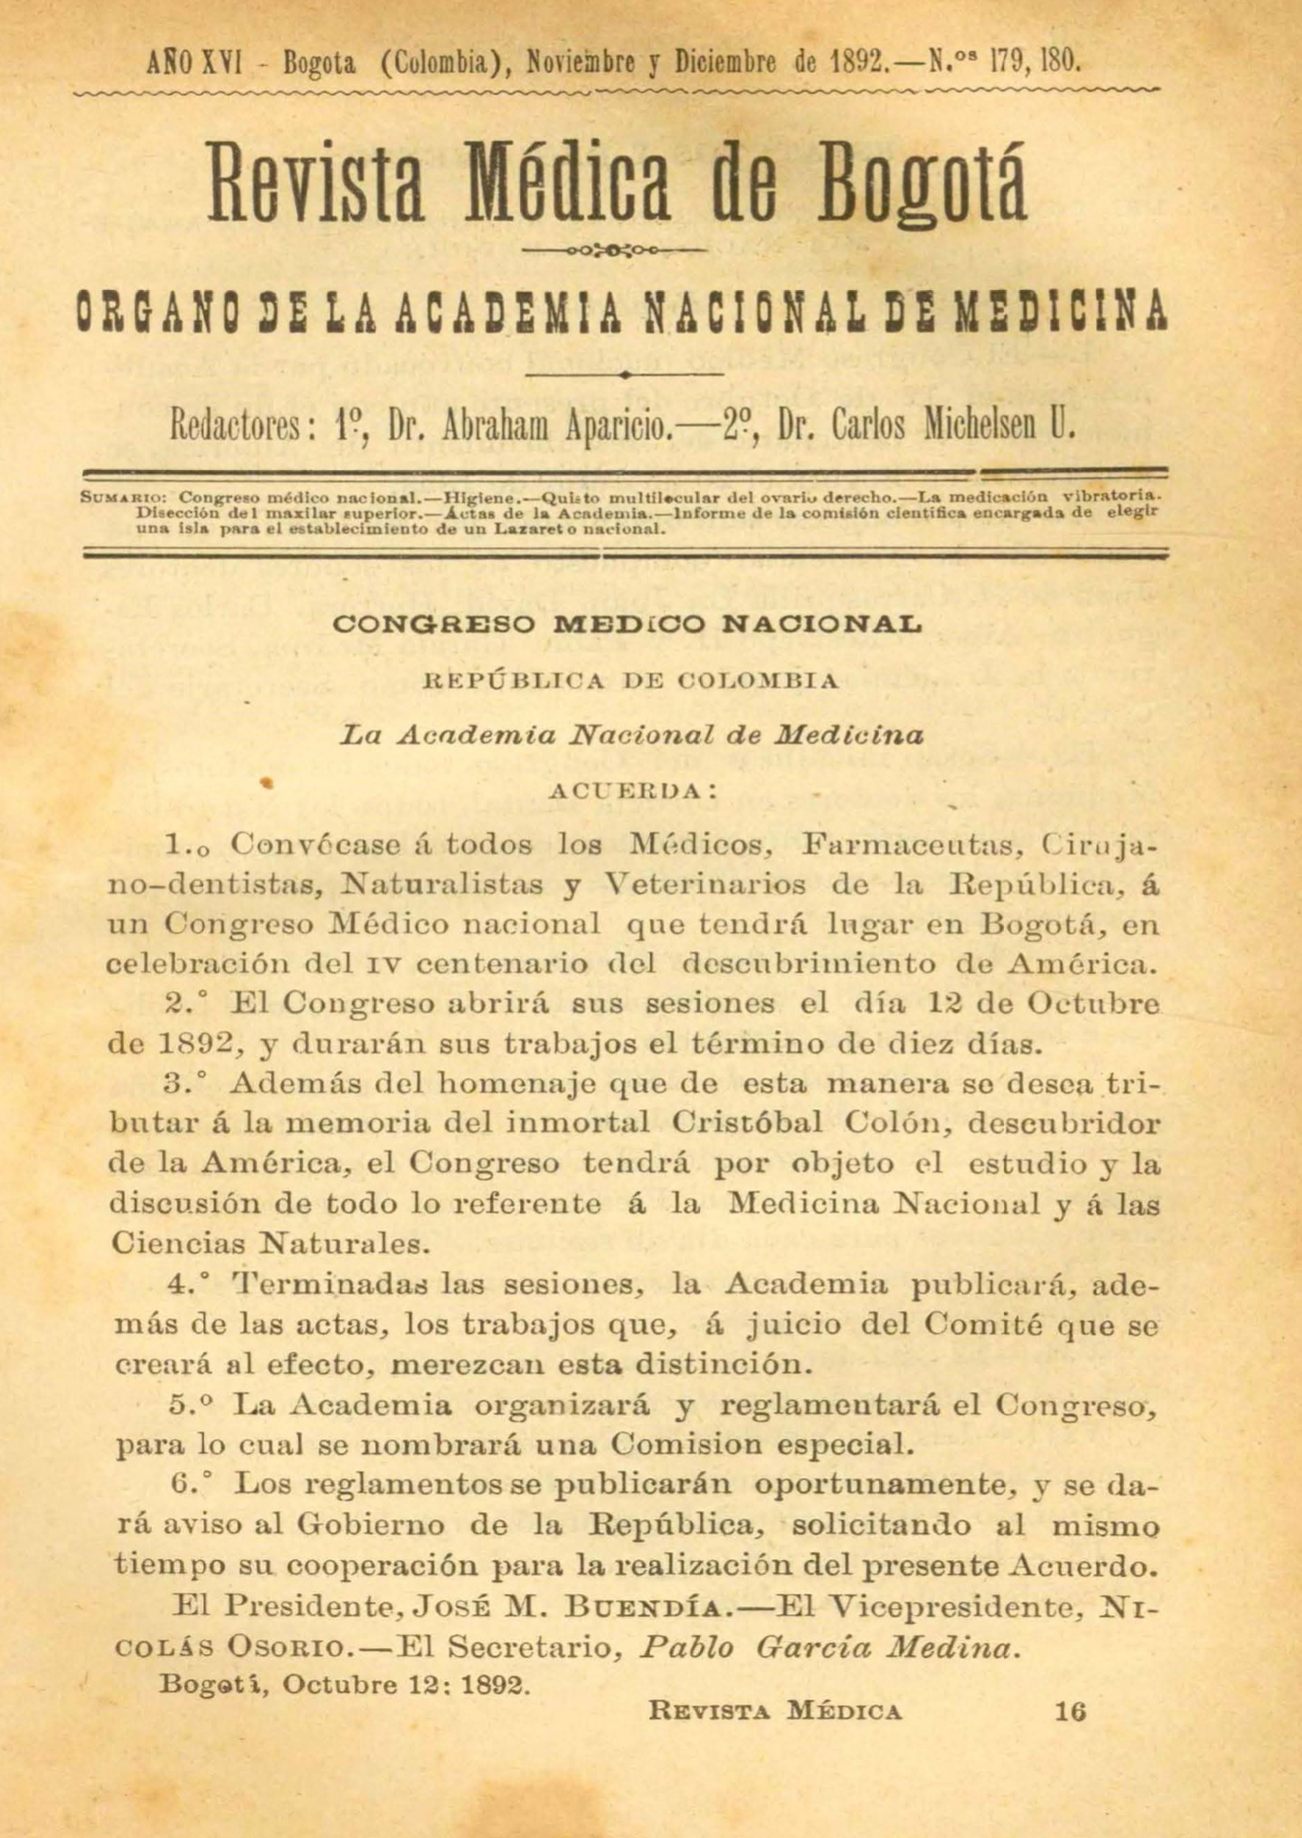 					Ver Vol. 16 Núm. 179-180 (1892): Revista Médica de Bogotá. Serie 16. Noviembre-Diciembre de 1892. Núm. 179-180
				